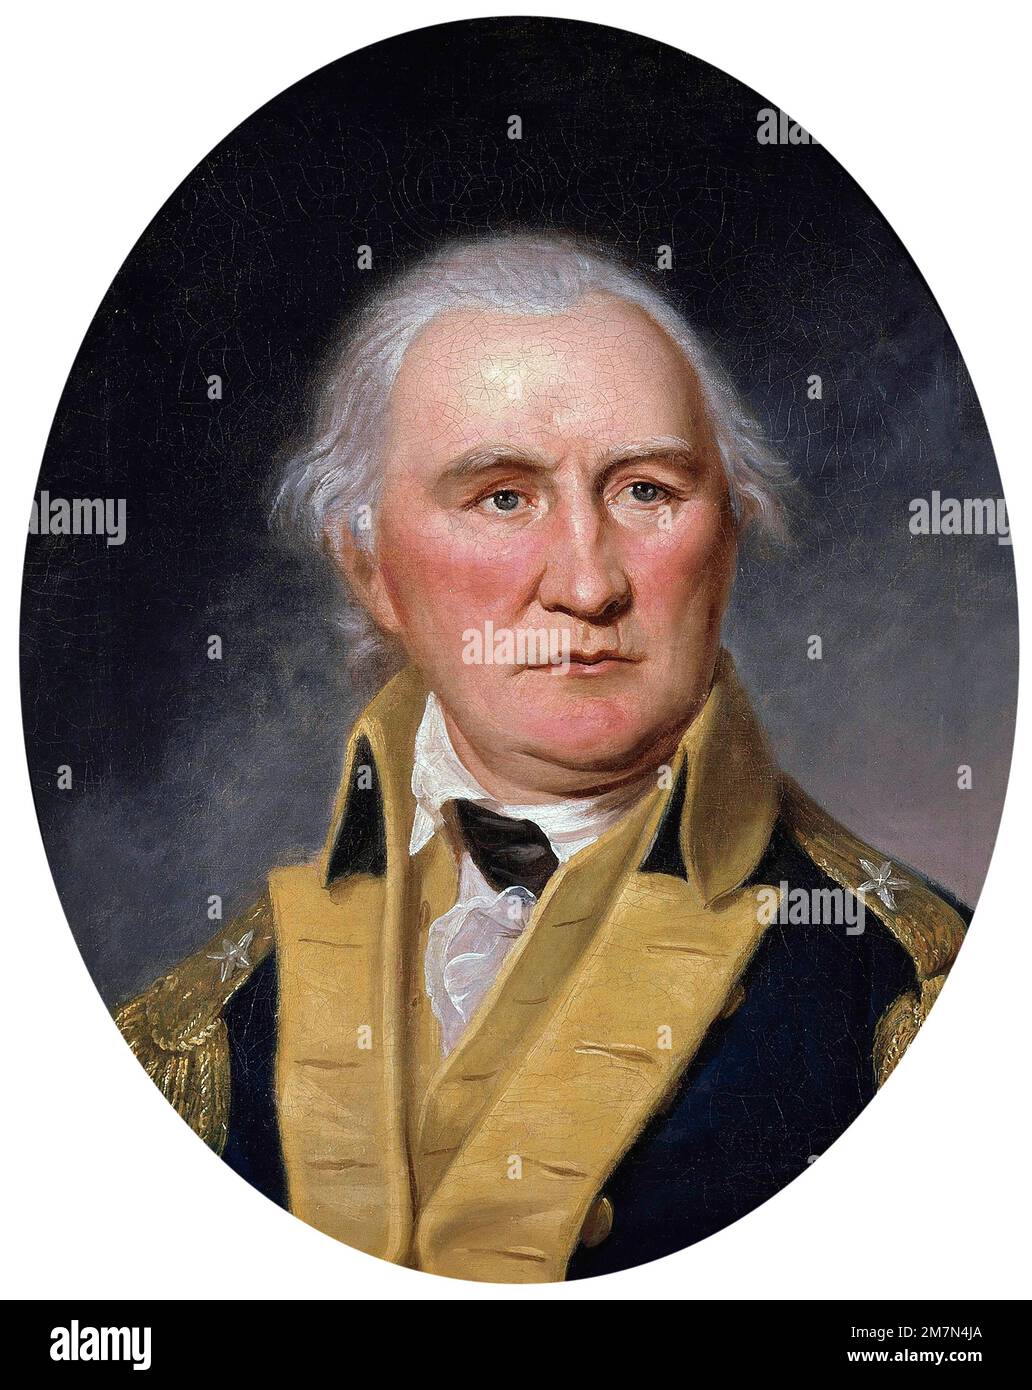 Daniel Morgan. Ritratto del soldato americano e politico della Virginia, Daniel Morgan (1735/1736-1802) di Charles Willson Peale, olio su tela, 1794 Foto Stock